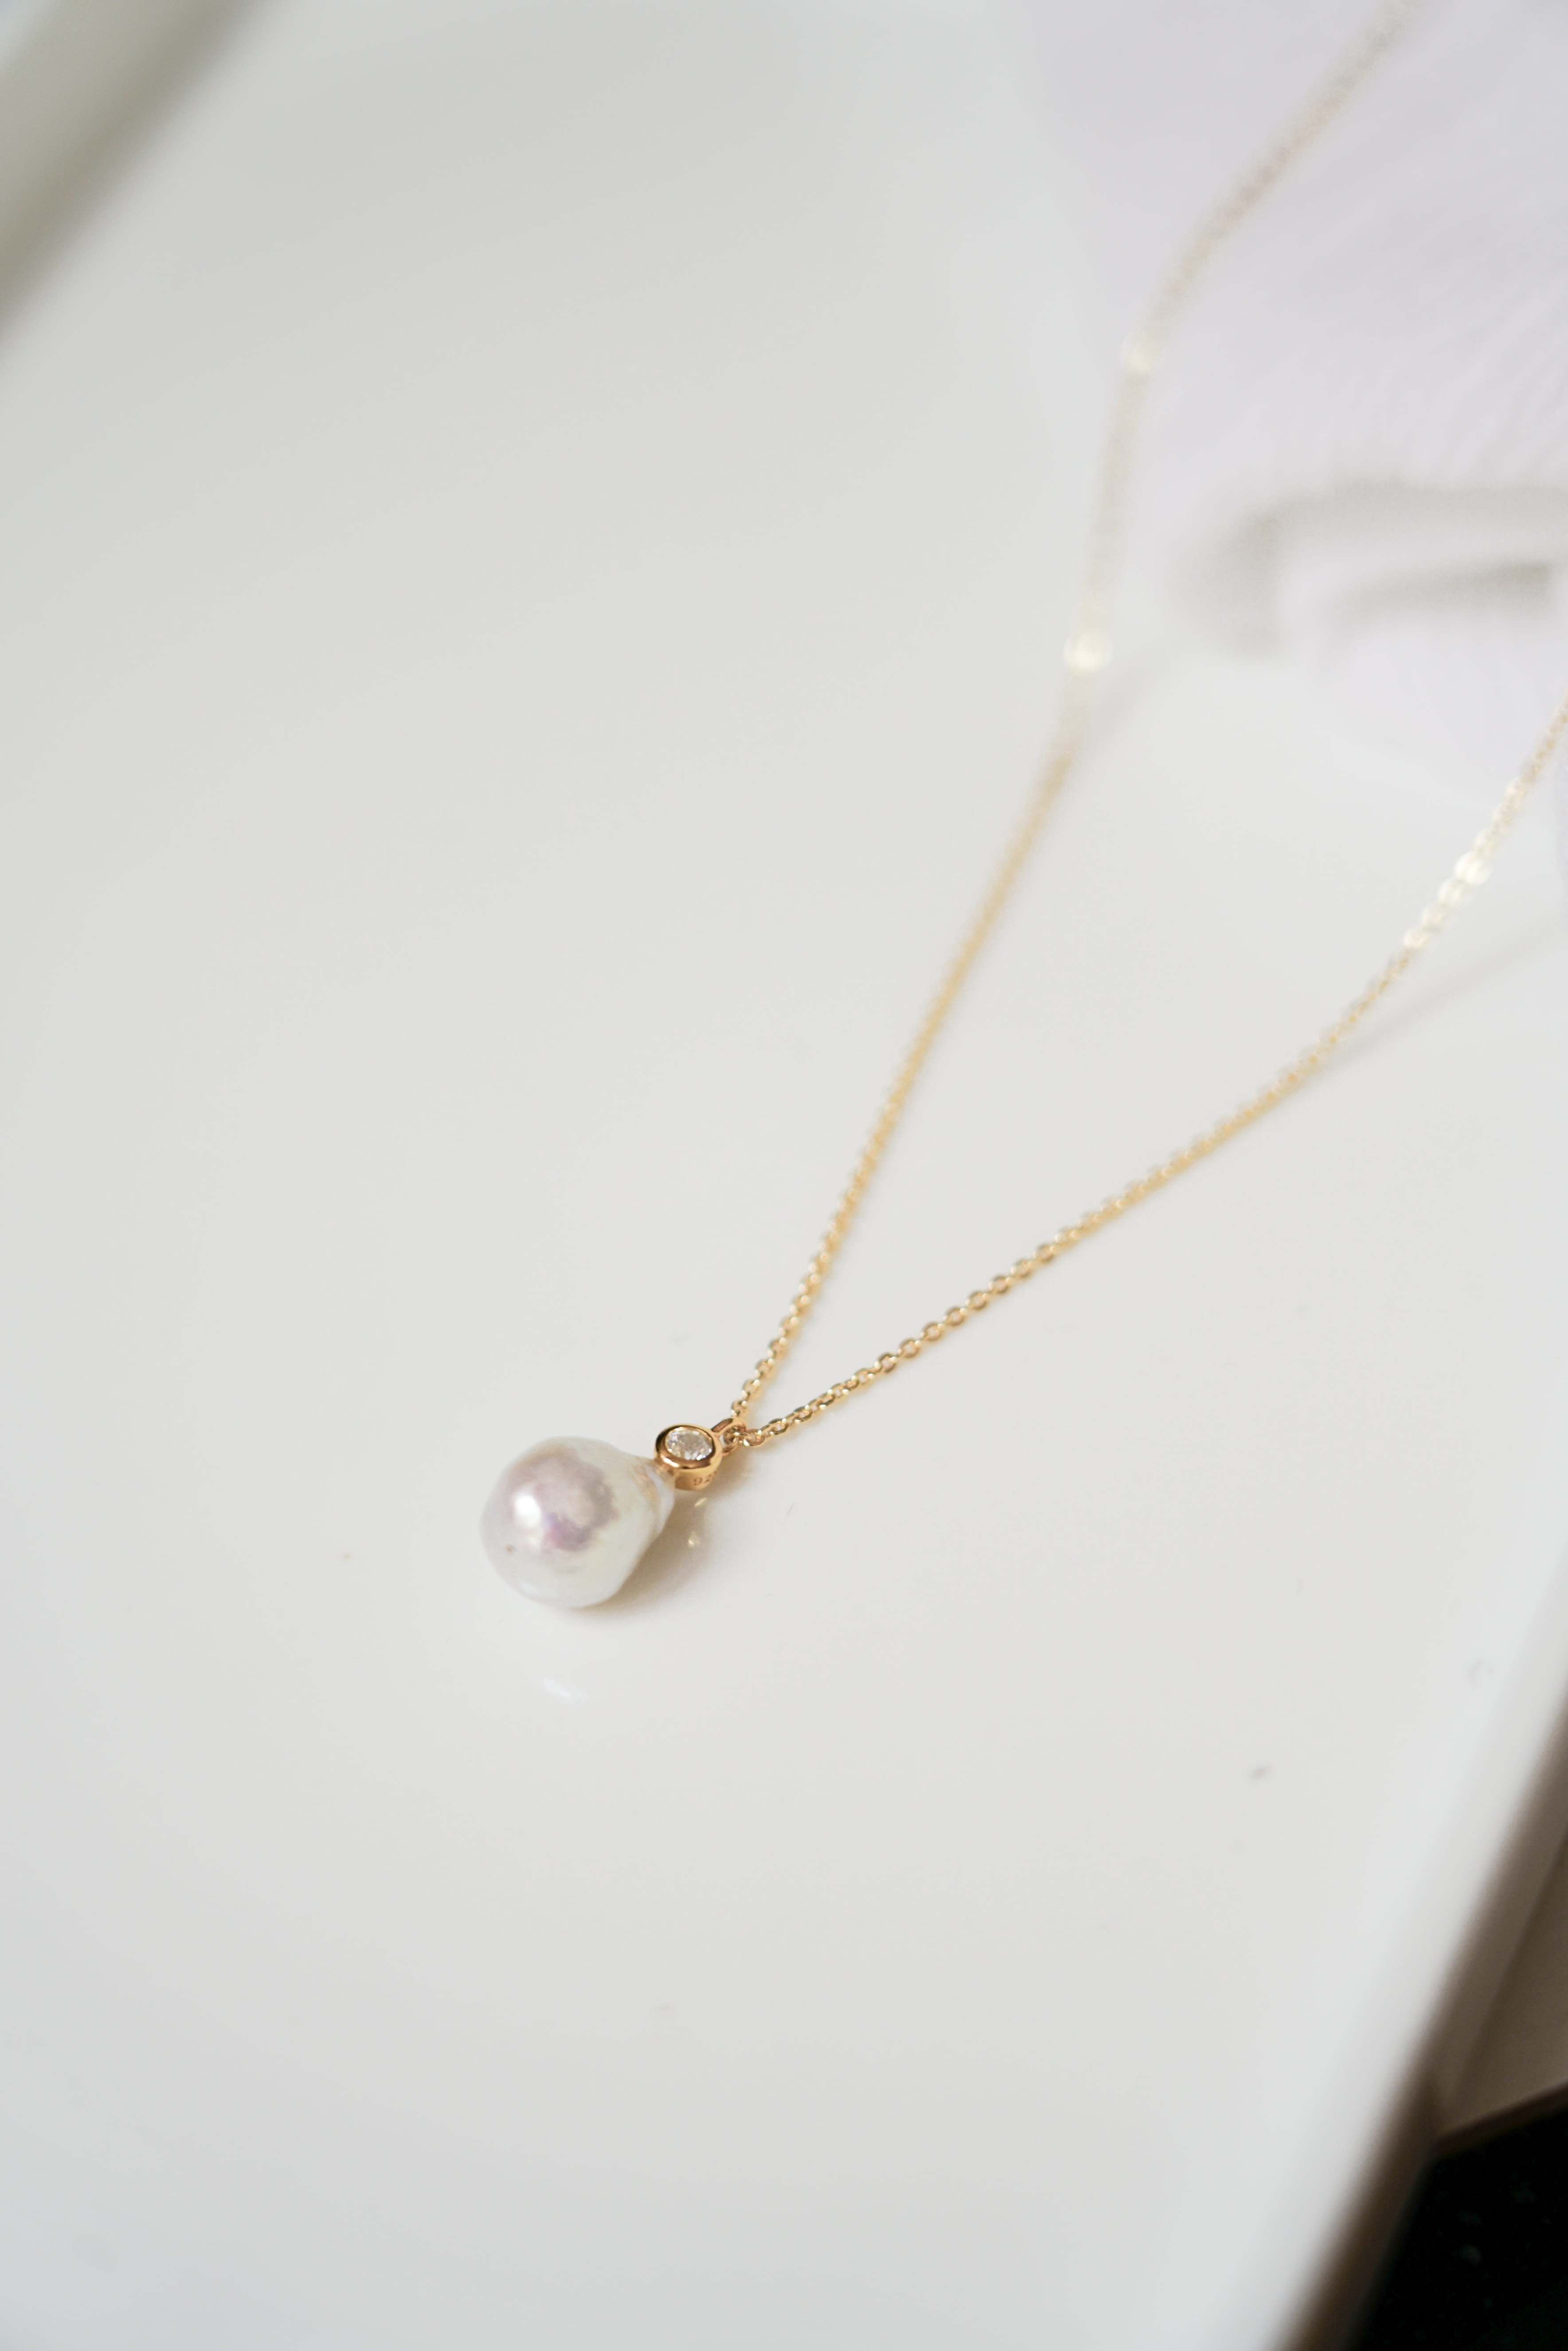 Collier long avec un zircon et une perle baroque bohème sur un fond blanc